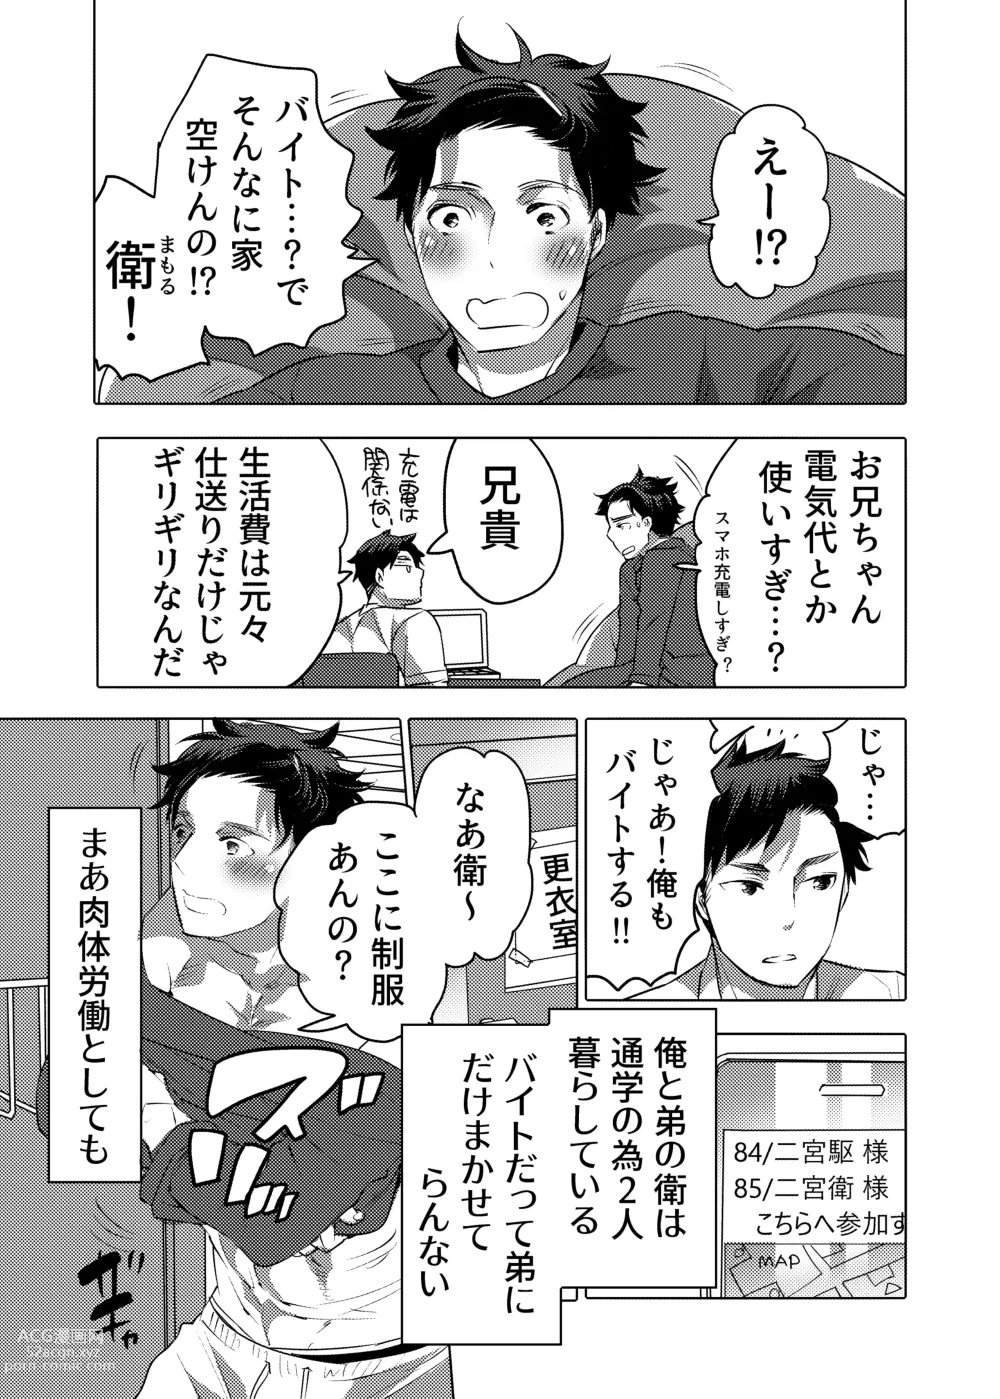 Page 3 of doujinshi Ochichi Hinpyoukai